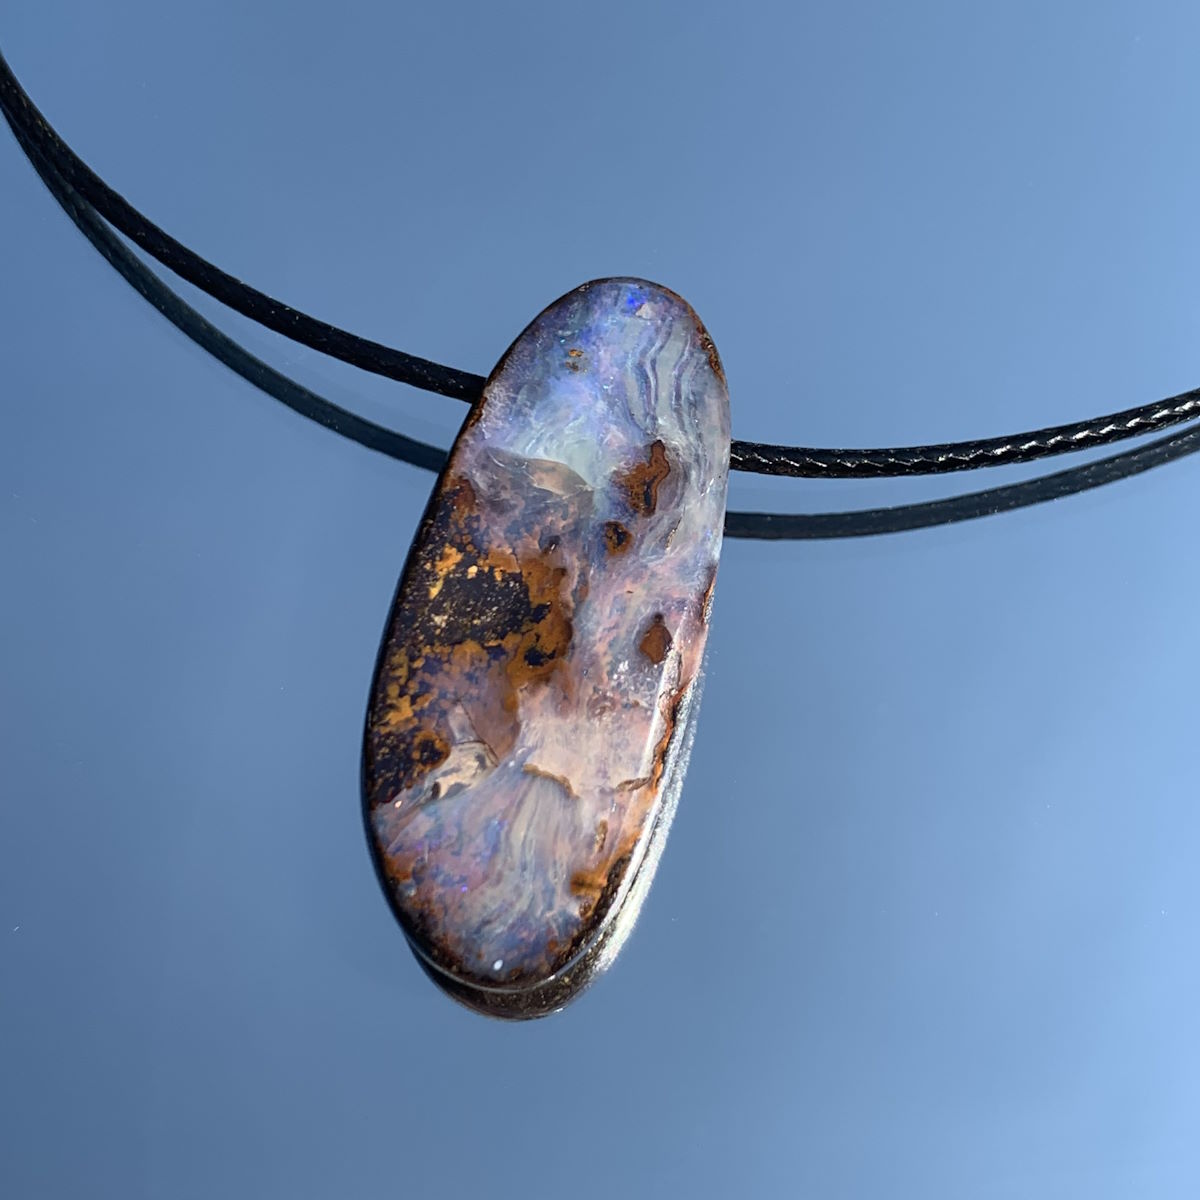 Boulder Opal Kettenanhänger von Steinwelten 